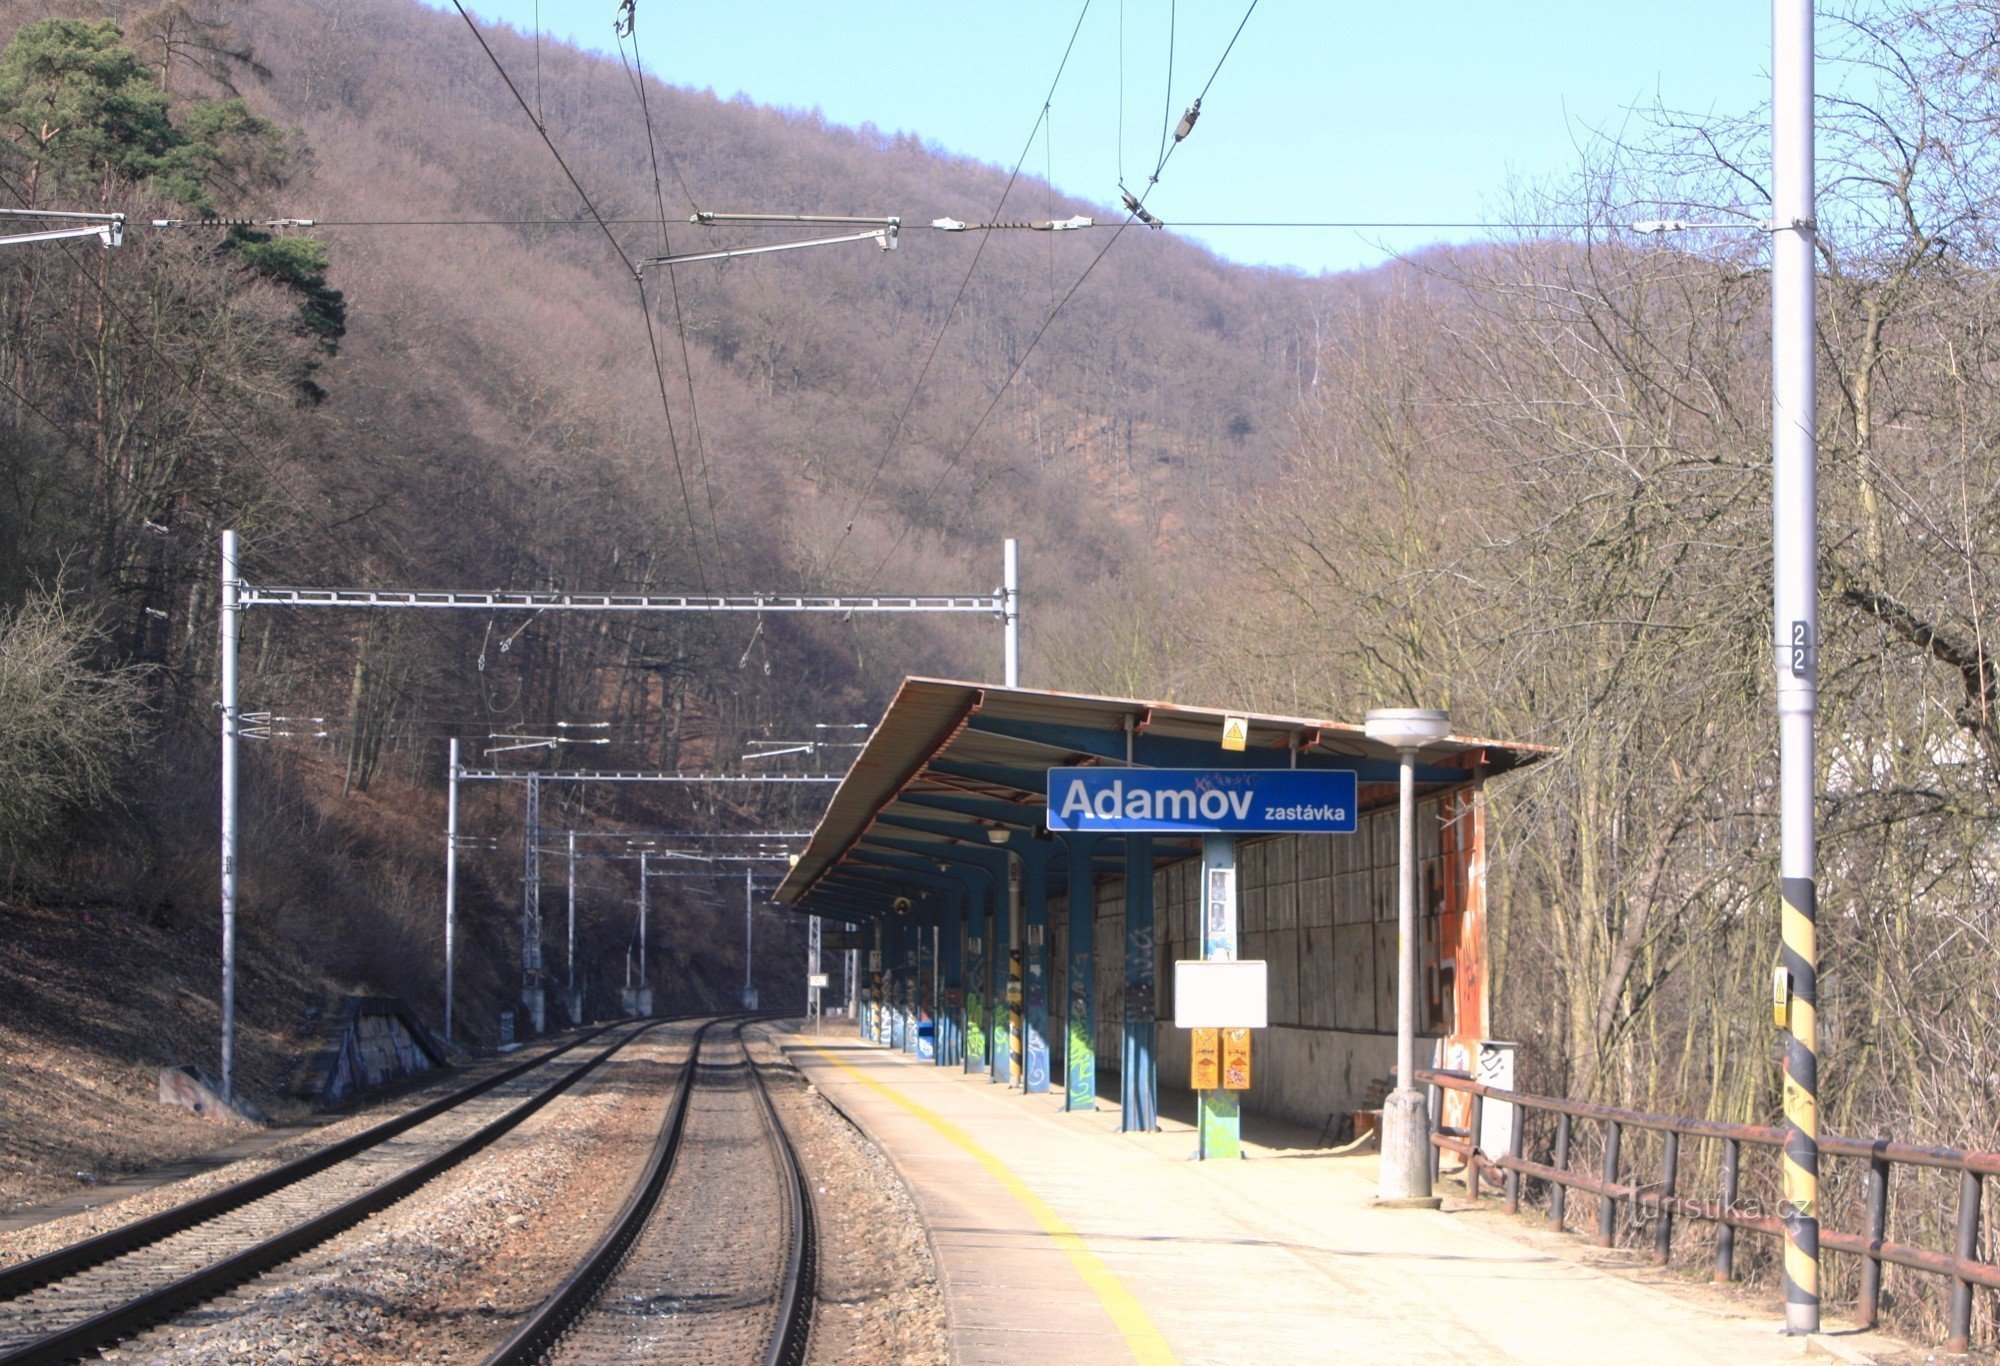 Adamov zastávka - železniční stanice